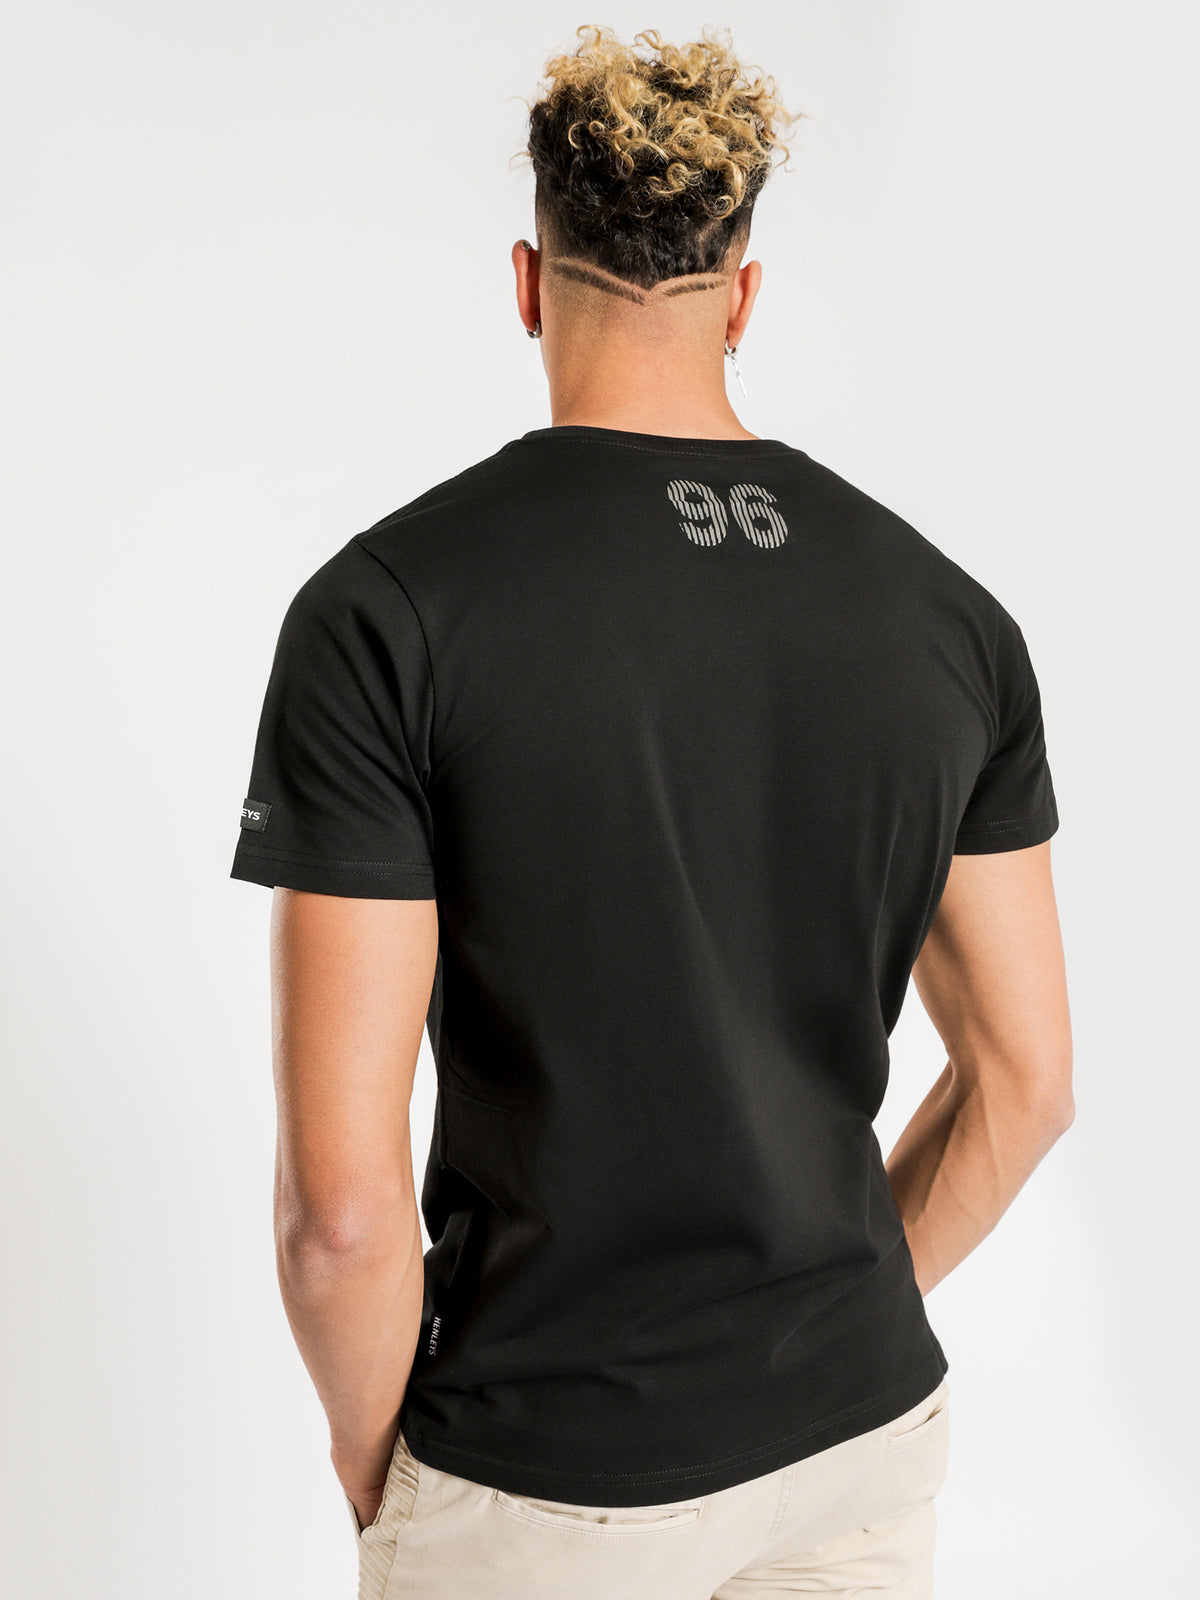 Rivera T-Shirt in Black